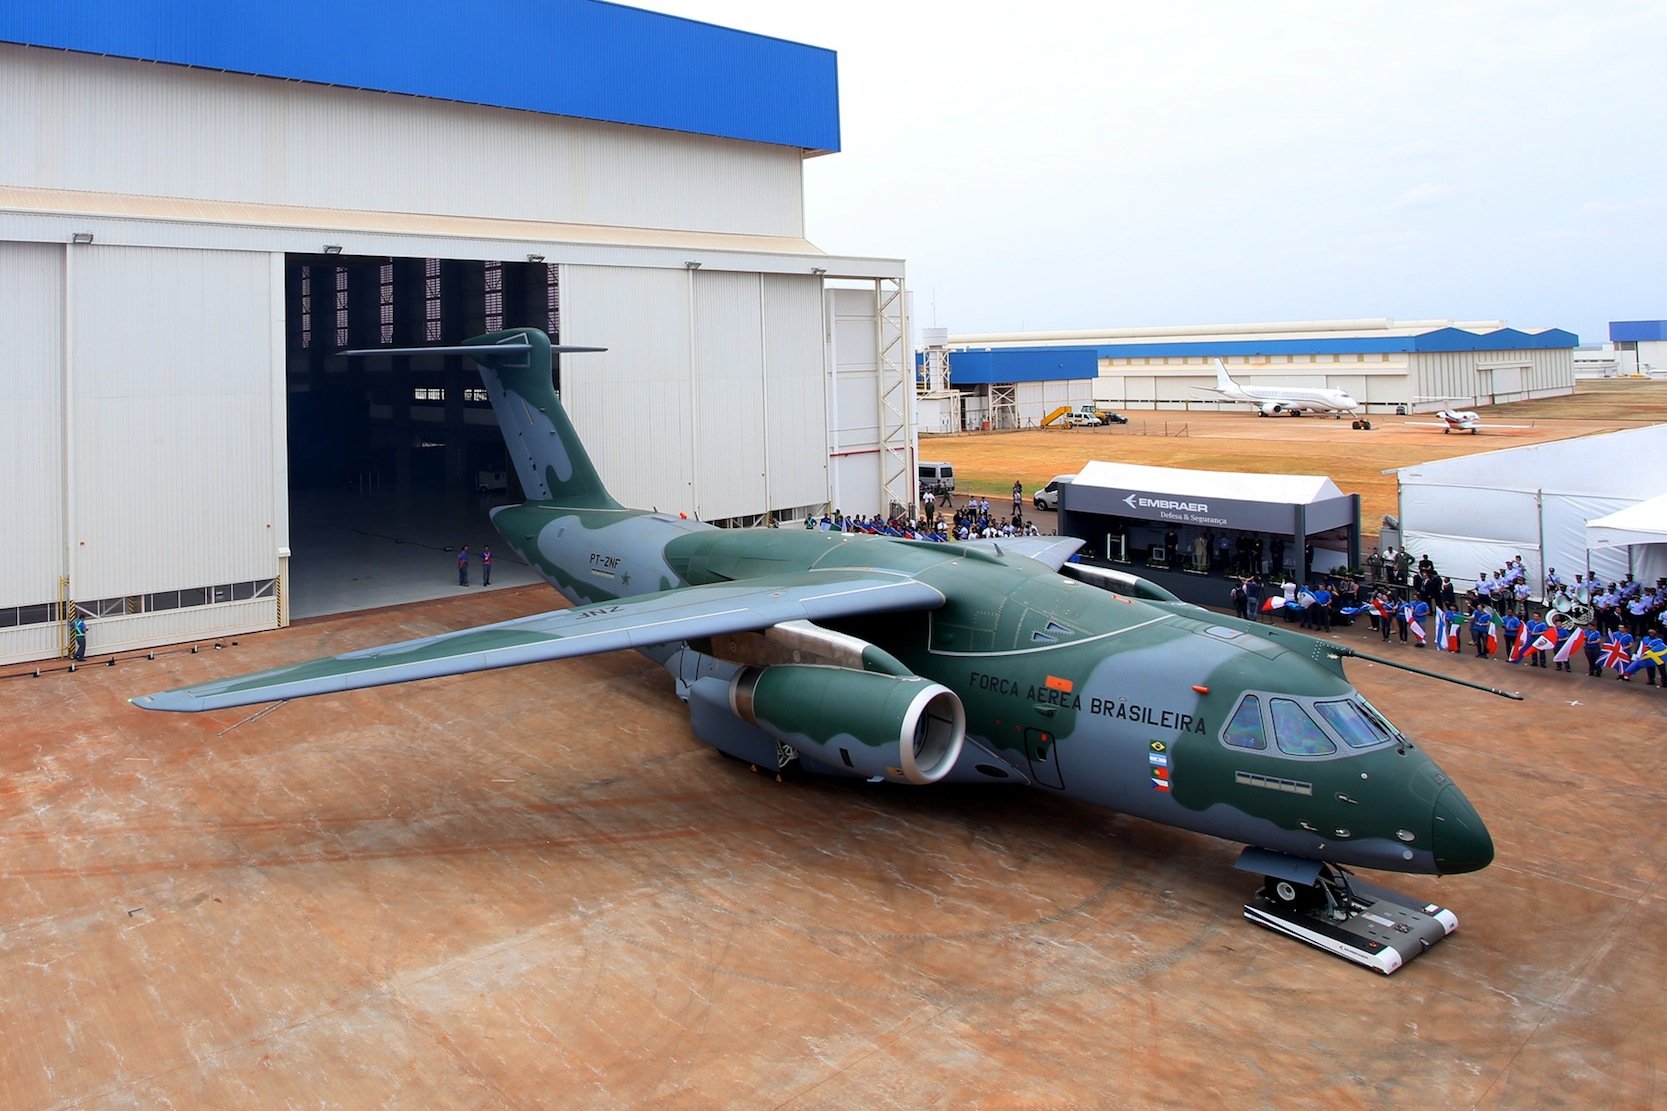 Vorstellung des Militärtransporters KC-390 von Embraer in Brasilien: Angetrieben wird die KC-390 von zwei Jet-Motoren des Typs IAE 2500 aus den USA. 